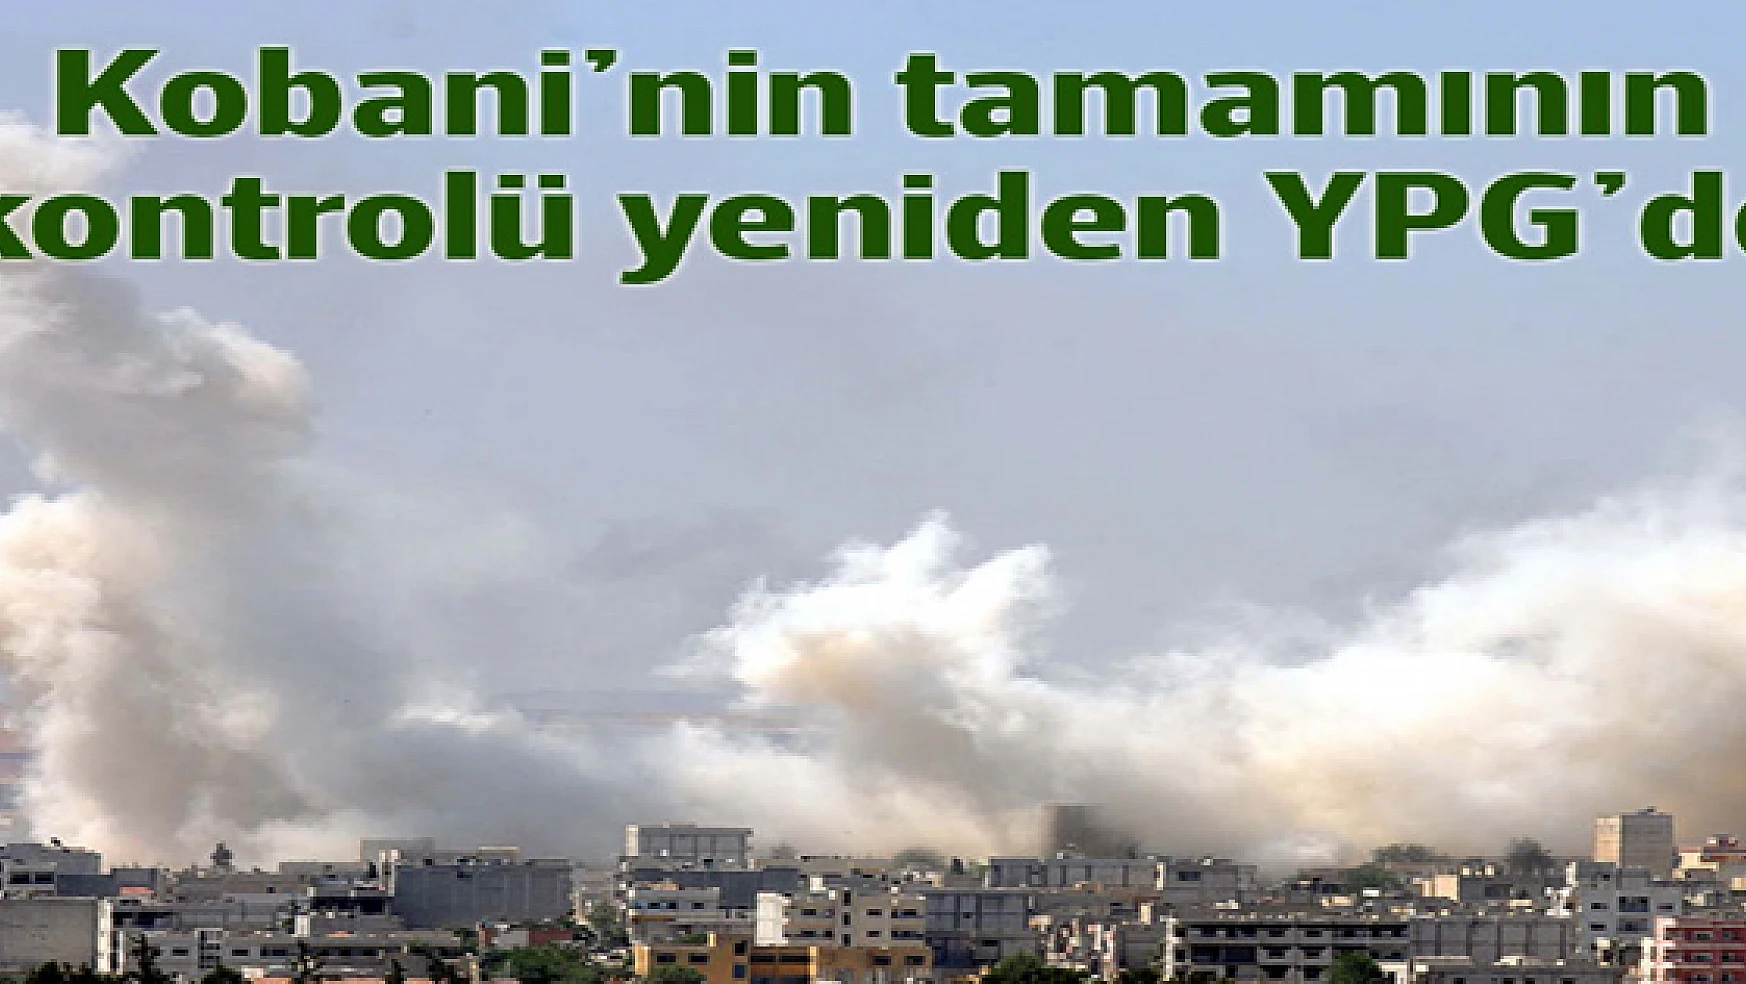 Kobani'nin tamamının kontrolü yeniden YPG'de